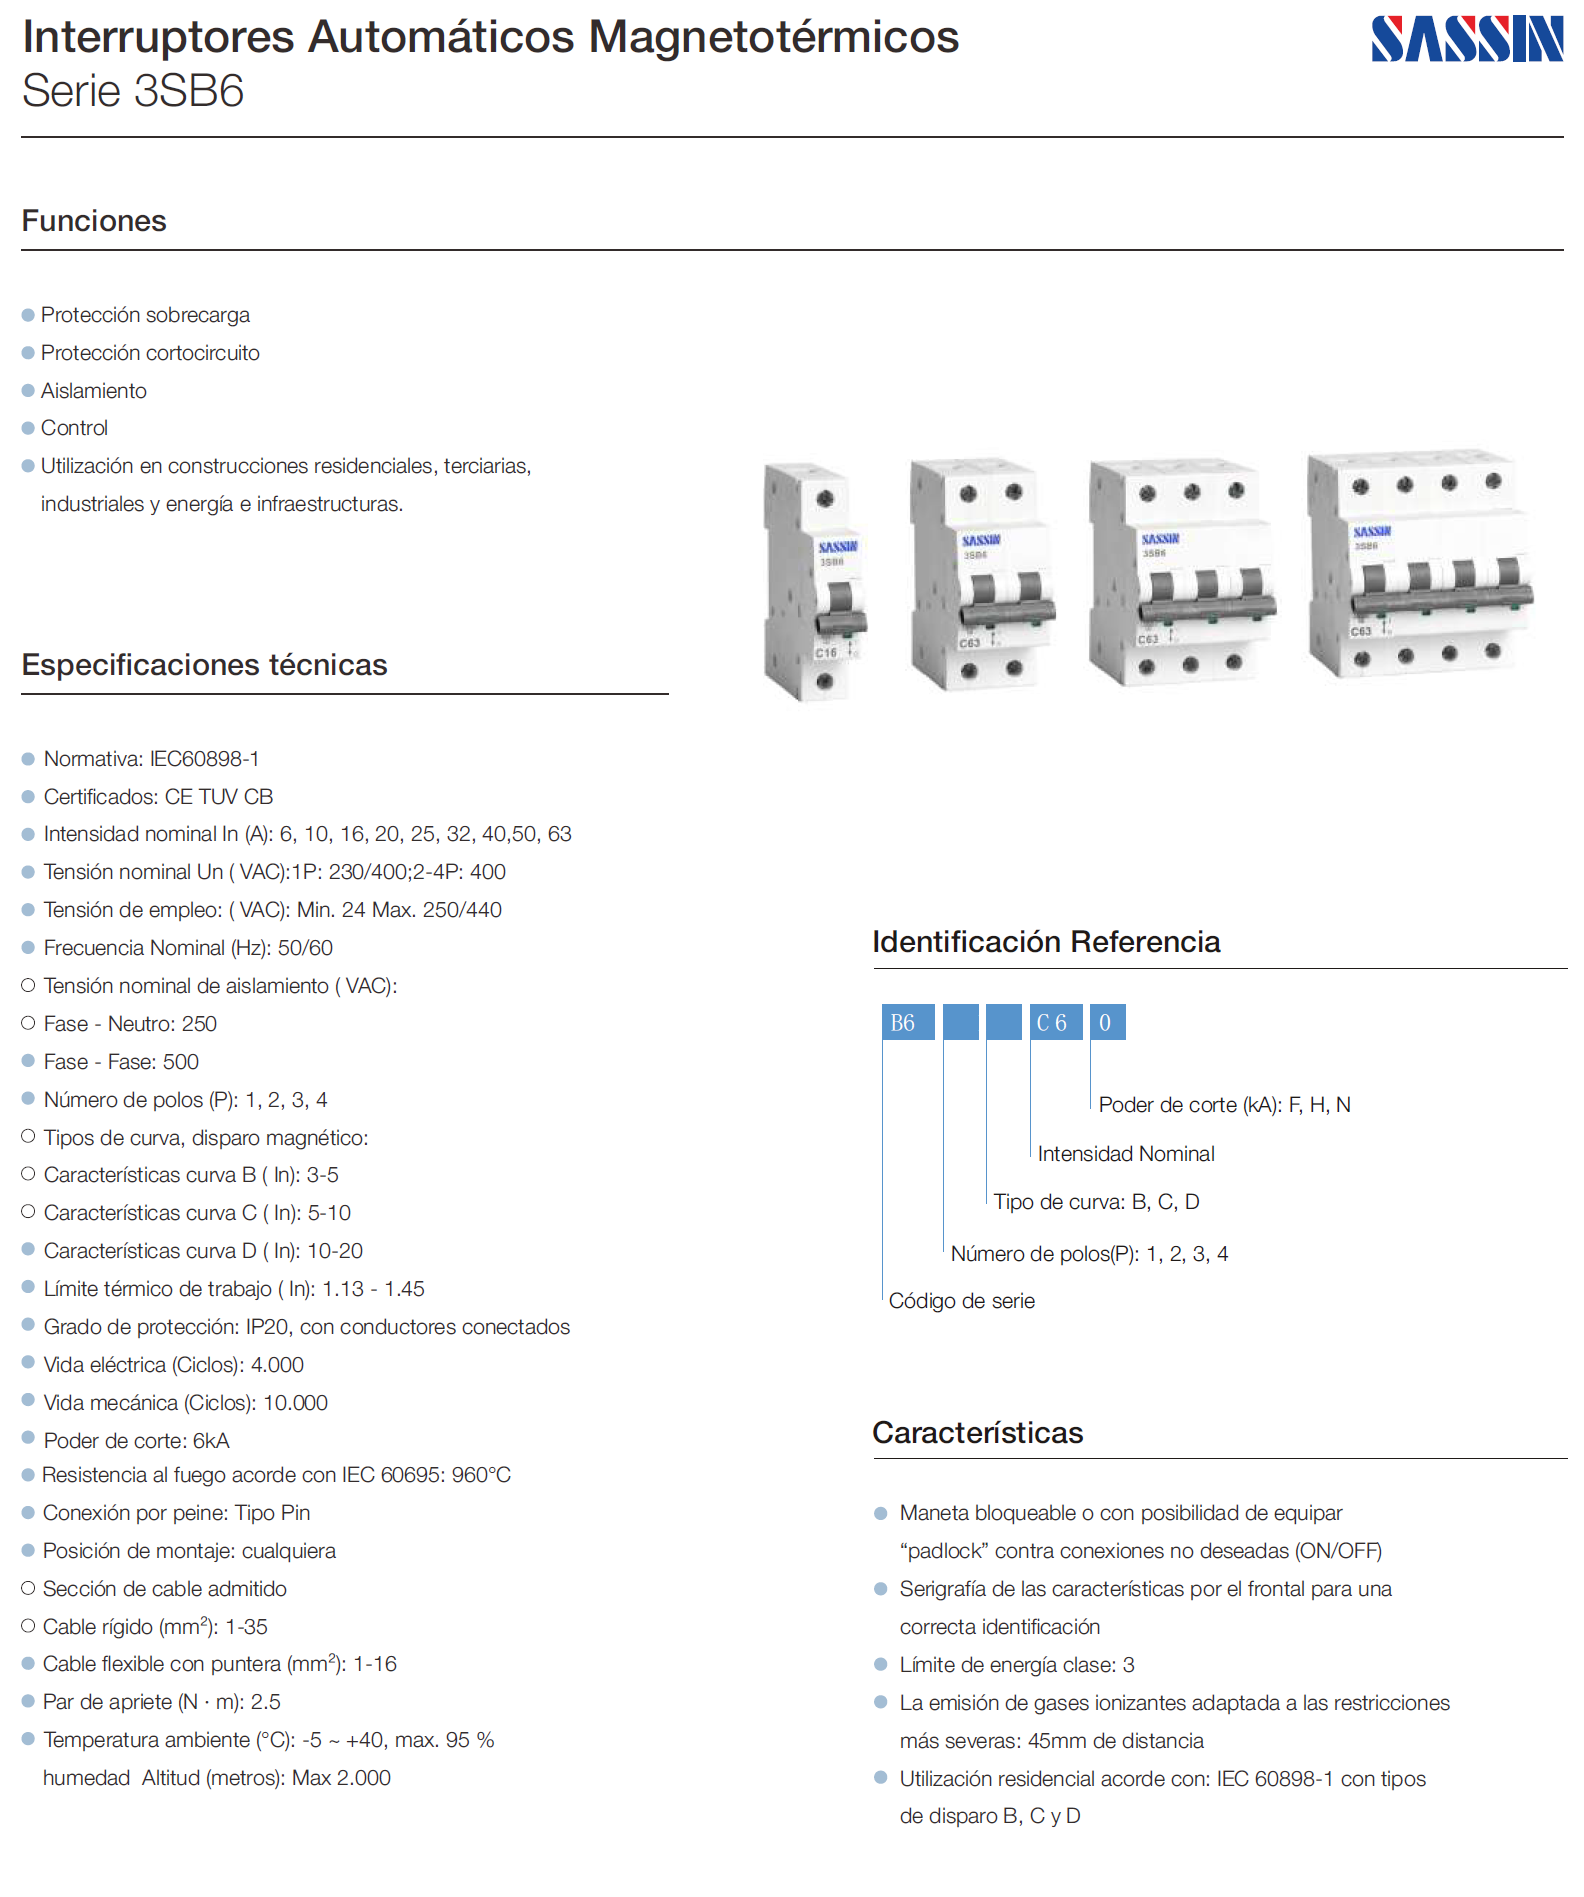 Interruptor automático magnetotérmico  SASSIN serie 3SB6 de 2P 16A son:    DATOS TÉCNICOS:      Normativa: IEC60898-1      Certificados: CE TUV CB      Intensidad nominal In (A): 6, 10, 16, 20, 25, 32, 40,50, 63      Tensión nominal Un ( VAC):1P: 230/400;2-4P: 400      Tensión de empleo: ( VAC): Min. 24 Max. 250/440      Frecuencia Nominal (Hz): 50/60      Tensión nominal de aislamiento ( VAC):          Fase - Neutro: 250          Fase - Fase: 500          Número de polos (P): 1, 2, 3, 4          Tipos de curva, disparo magnético:          Características curva B ( In): 3-5          Características curva C ( In): 5-10          Características curva D ( In): 10-20          Límite térmico de trabajo ( In): 1.13 - 1.45          Grado de protección: IP20, con conductores conectados          Vida eléctrica (Ciclos): 4.000          Vida mecánica (Ciclos): 10.000          Poder de corte: 6kA          Conexión por peine: Tipo Pin          Posición de montaje: cualquiera          Sección de cable admitido          Cable rígido (mm²): 1-35          Cable flexible con puntera (mm²): 1-16          Par de apriete (N · m): 2.5          humedad Altitud (metros): Max 2.000          Resistencia al fuego acorde con IEC 60695: 960°C          Temperatura ambiente (°C): -5 ~ +40, max. 95 %          humedad Altitud (metros): Max 2.000